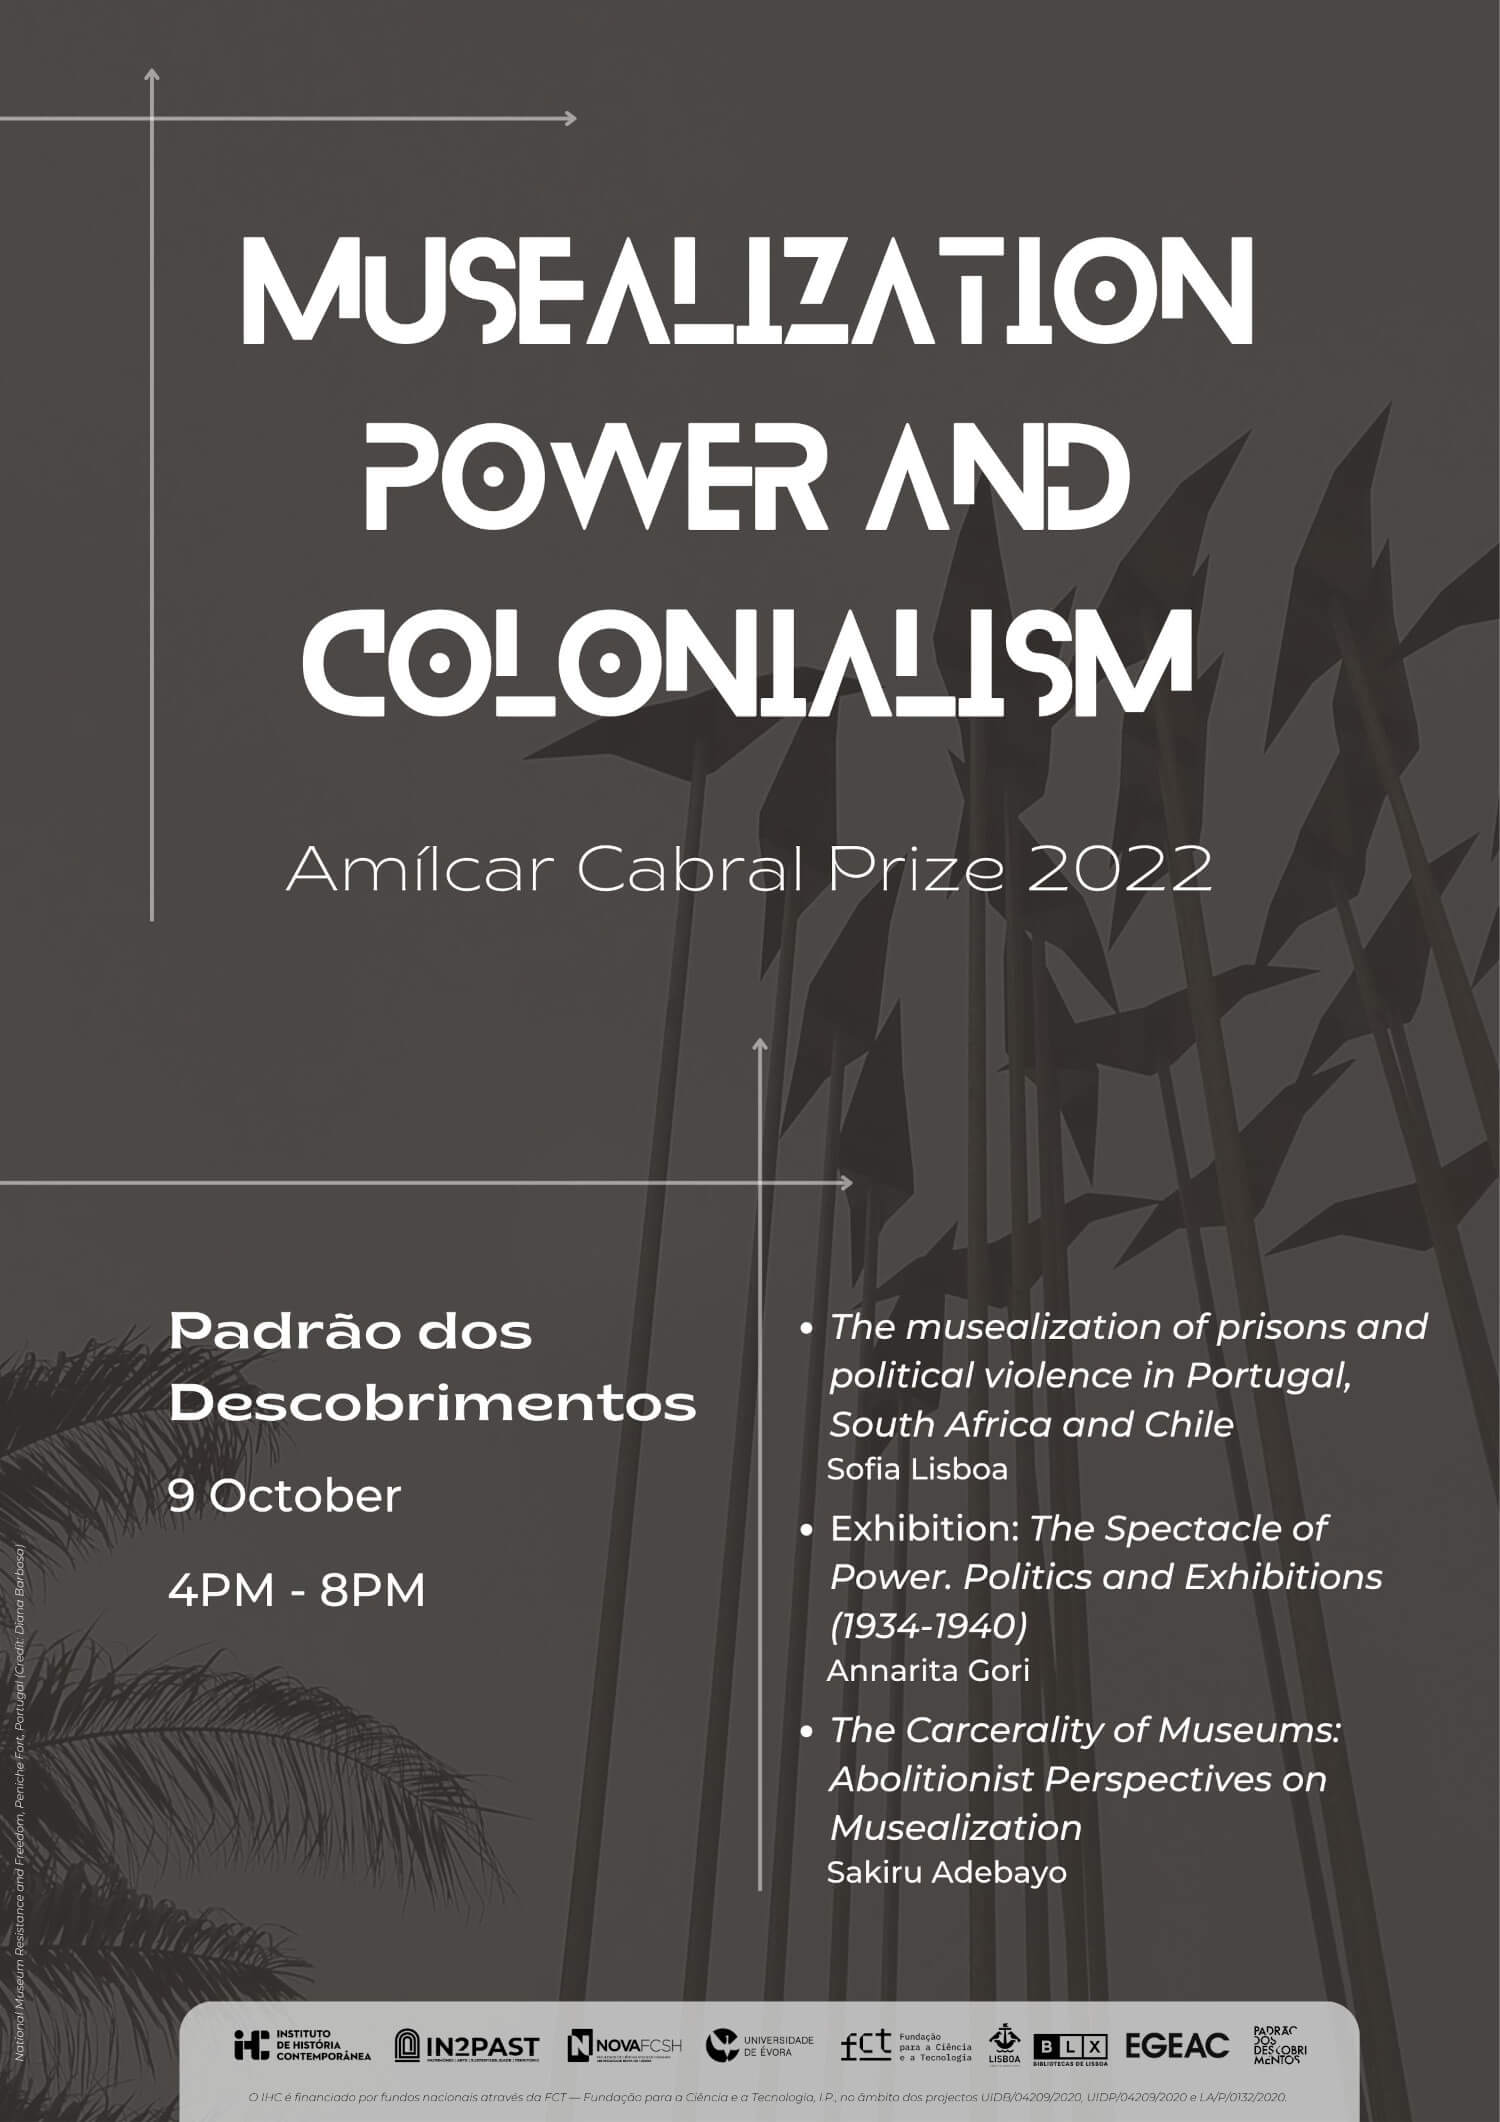 Cartaz do encontro “Musealization, Power and Colonialism”, organizado no âmbito do Prémio Amilcar Cabral 2022. 9 de Outubro, entre as 4 e as 20 horas, no Padrão dos Descobrimentos.